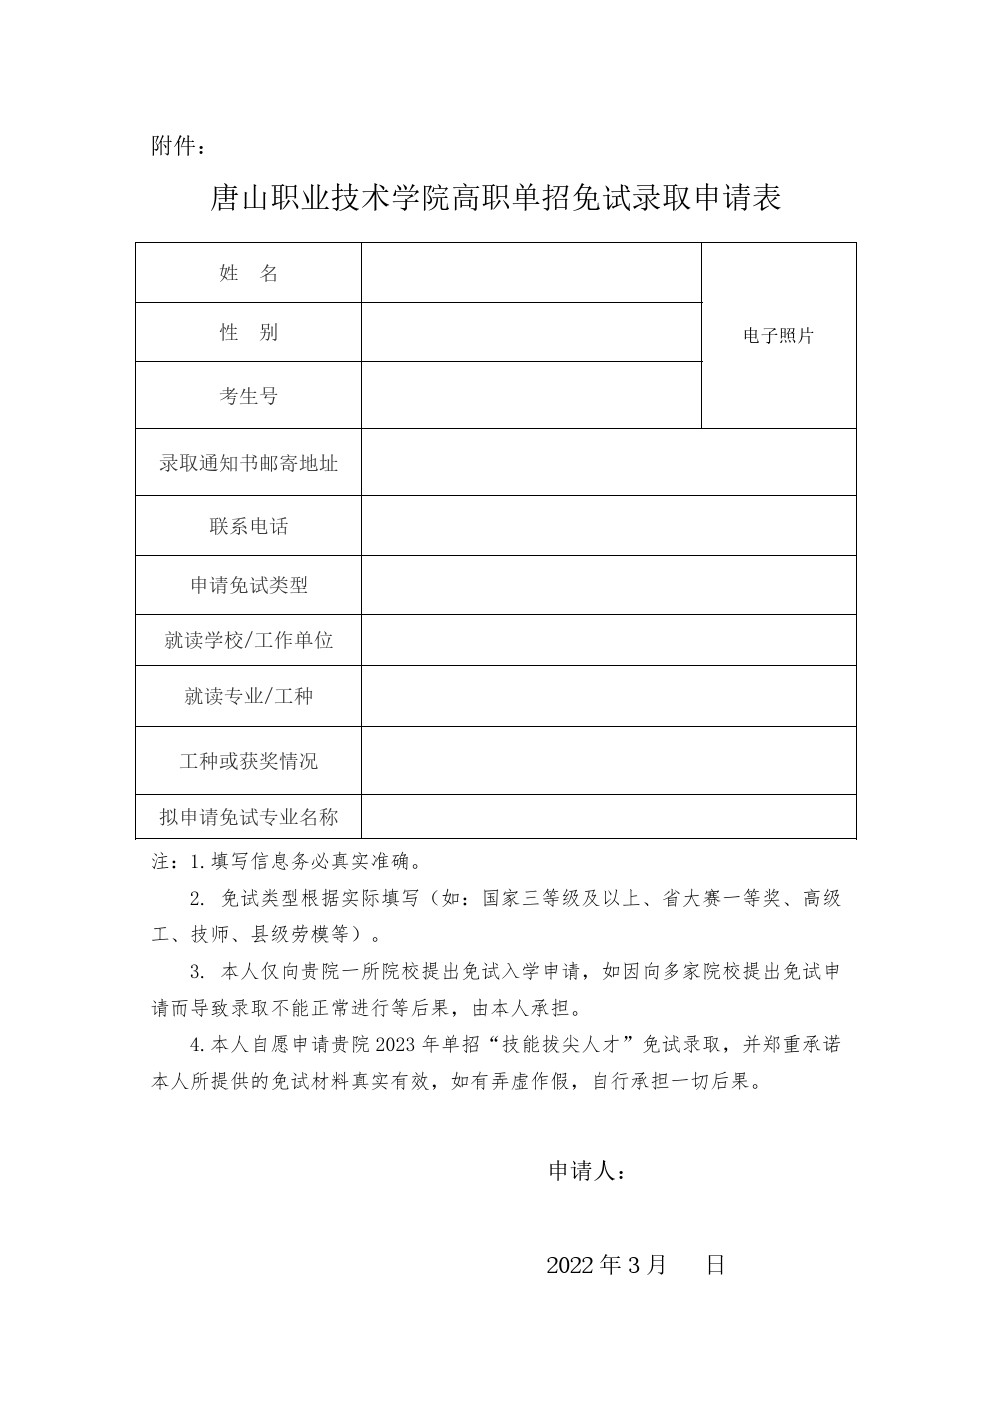 唐山职业技术学院关于2023年河北高职单招考试免试录取申请工作的通知 图1